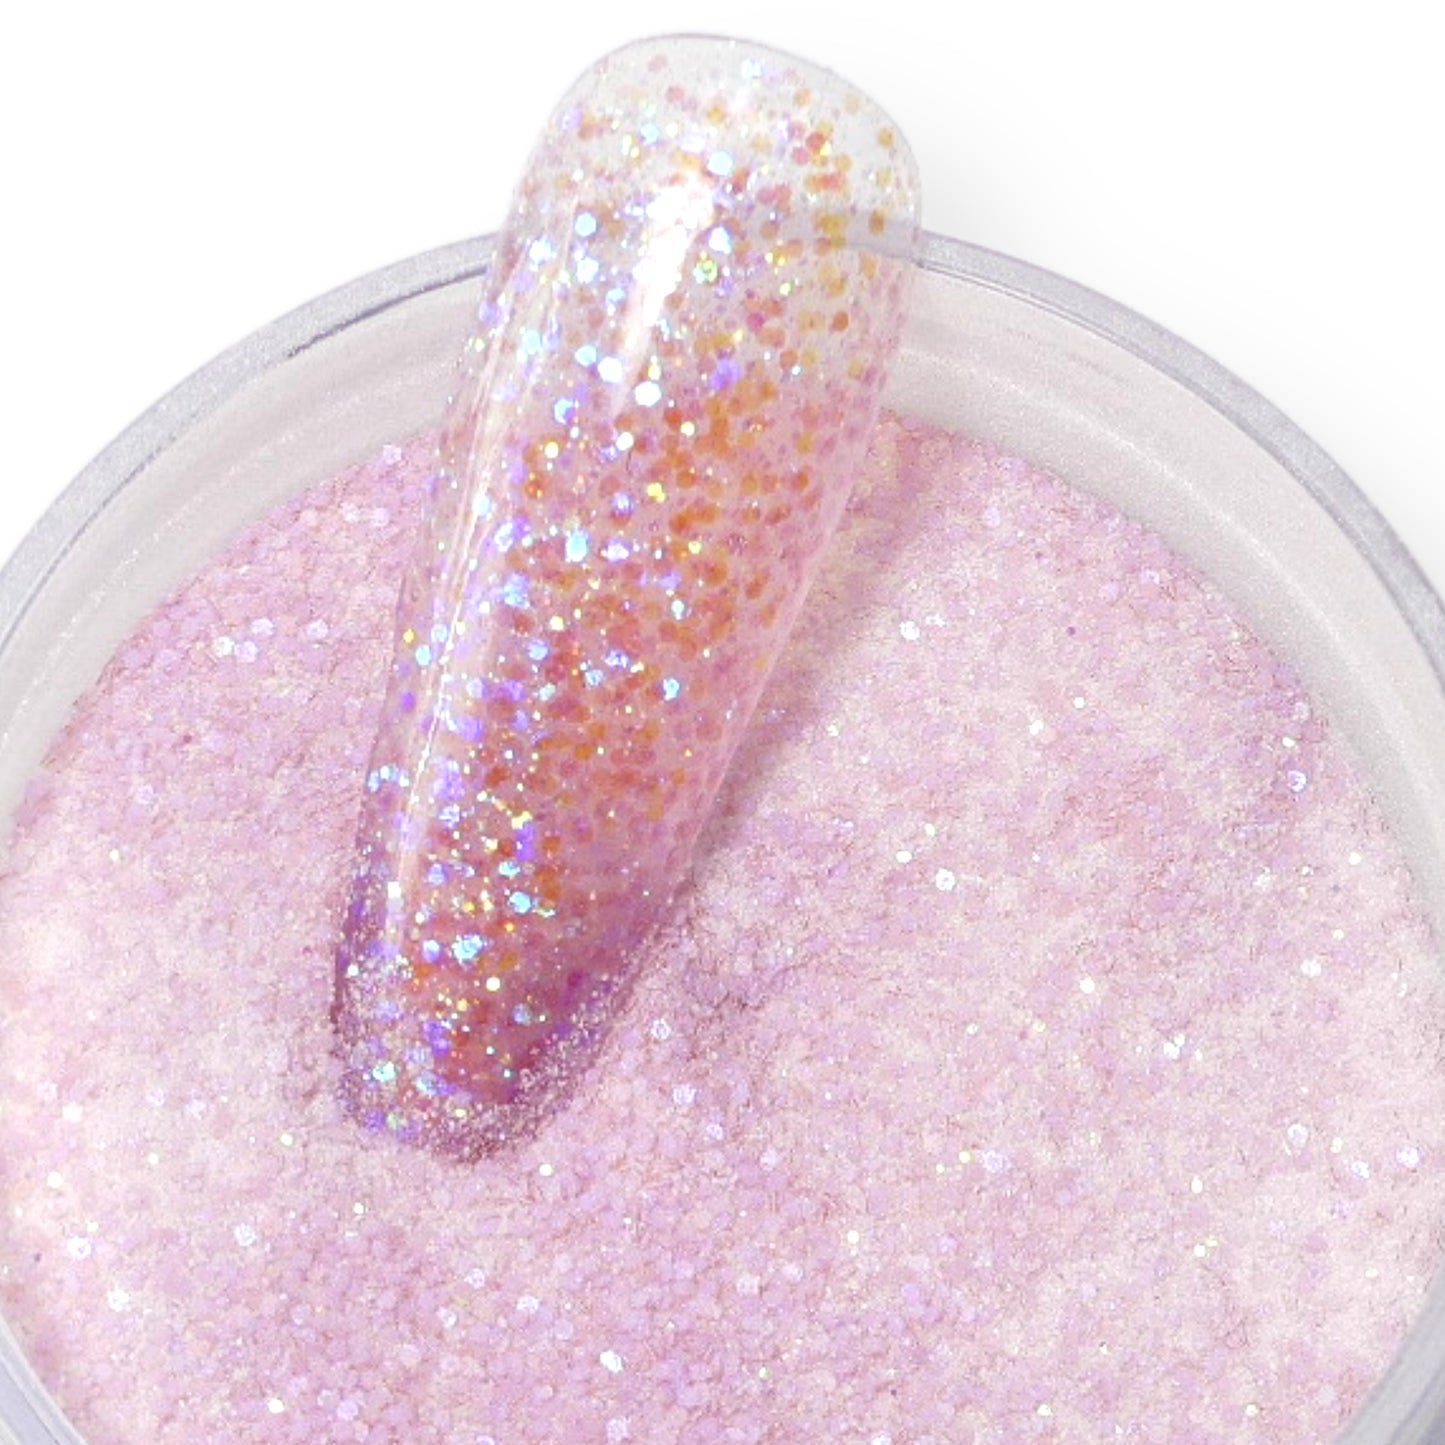 Brilliant Pink Glitter Acrylic Powder 1oz